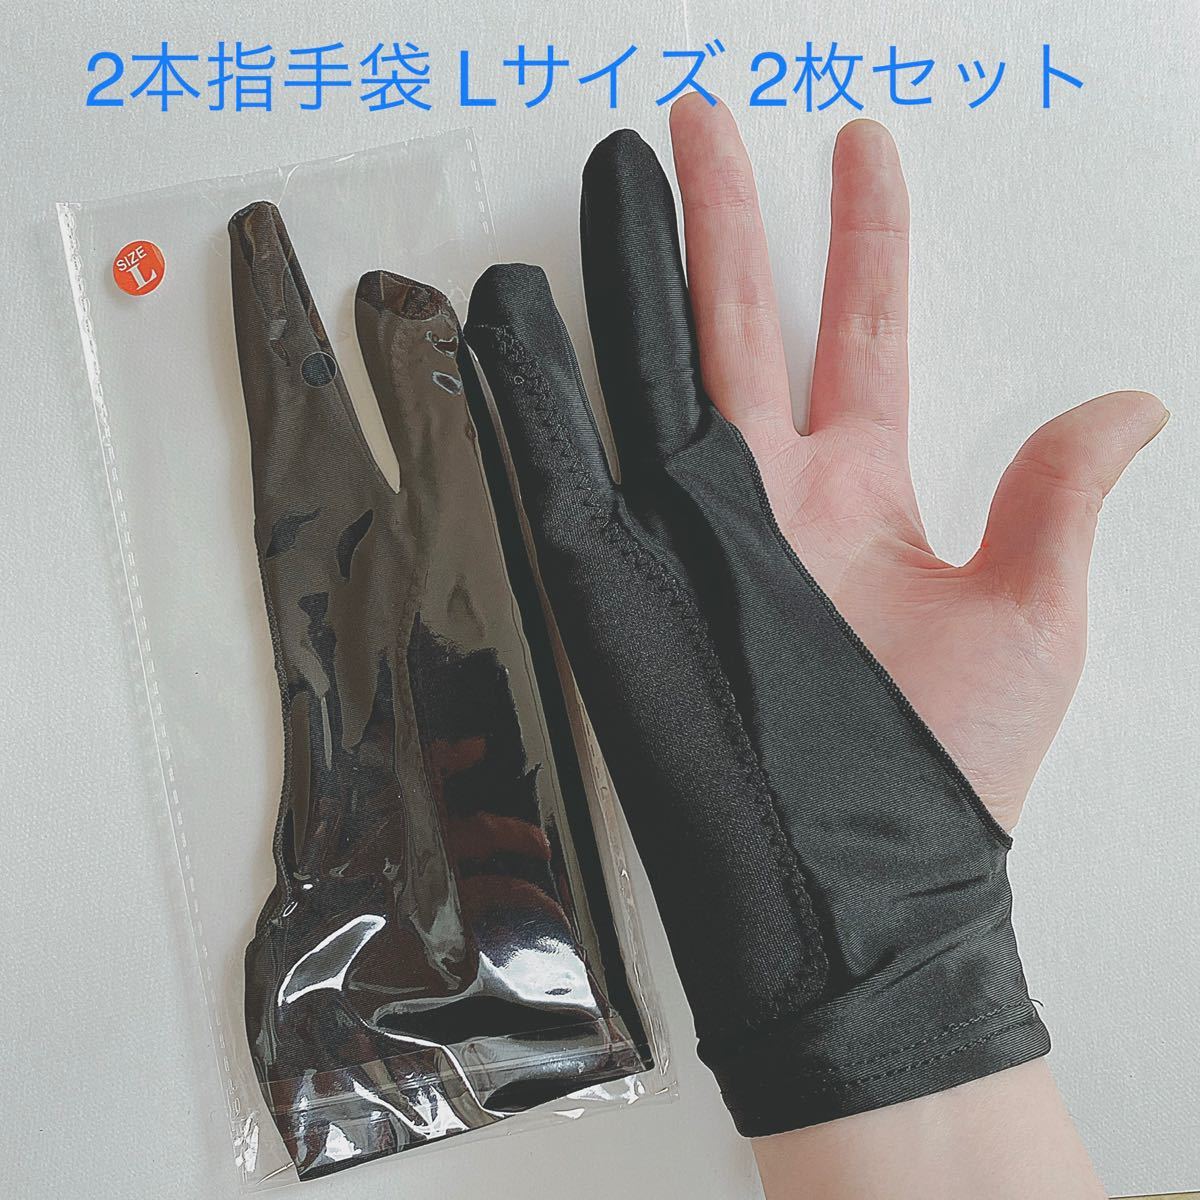 魅力的な価格 34デッサン用手袋 Lサイズ 2本指 グローブ タブレット 誤動作防止 絵画美術